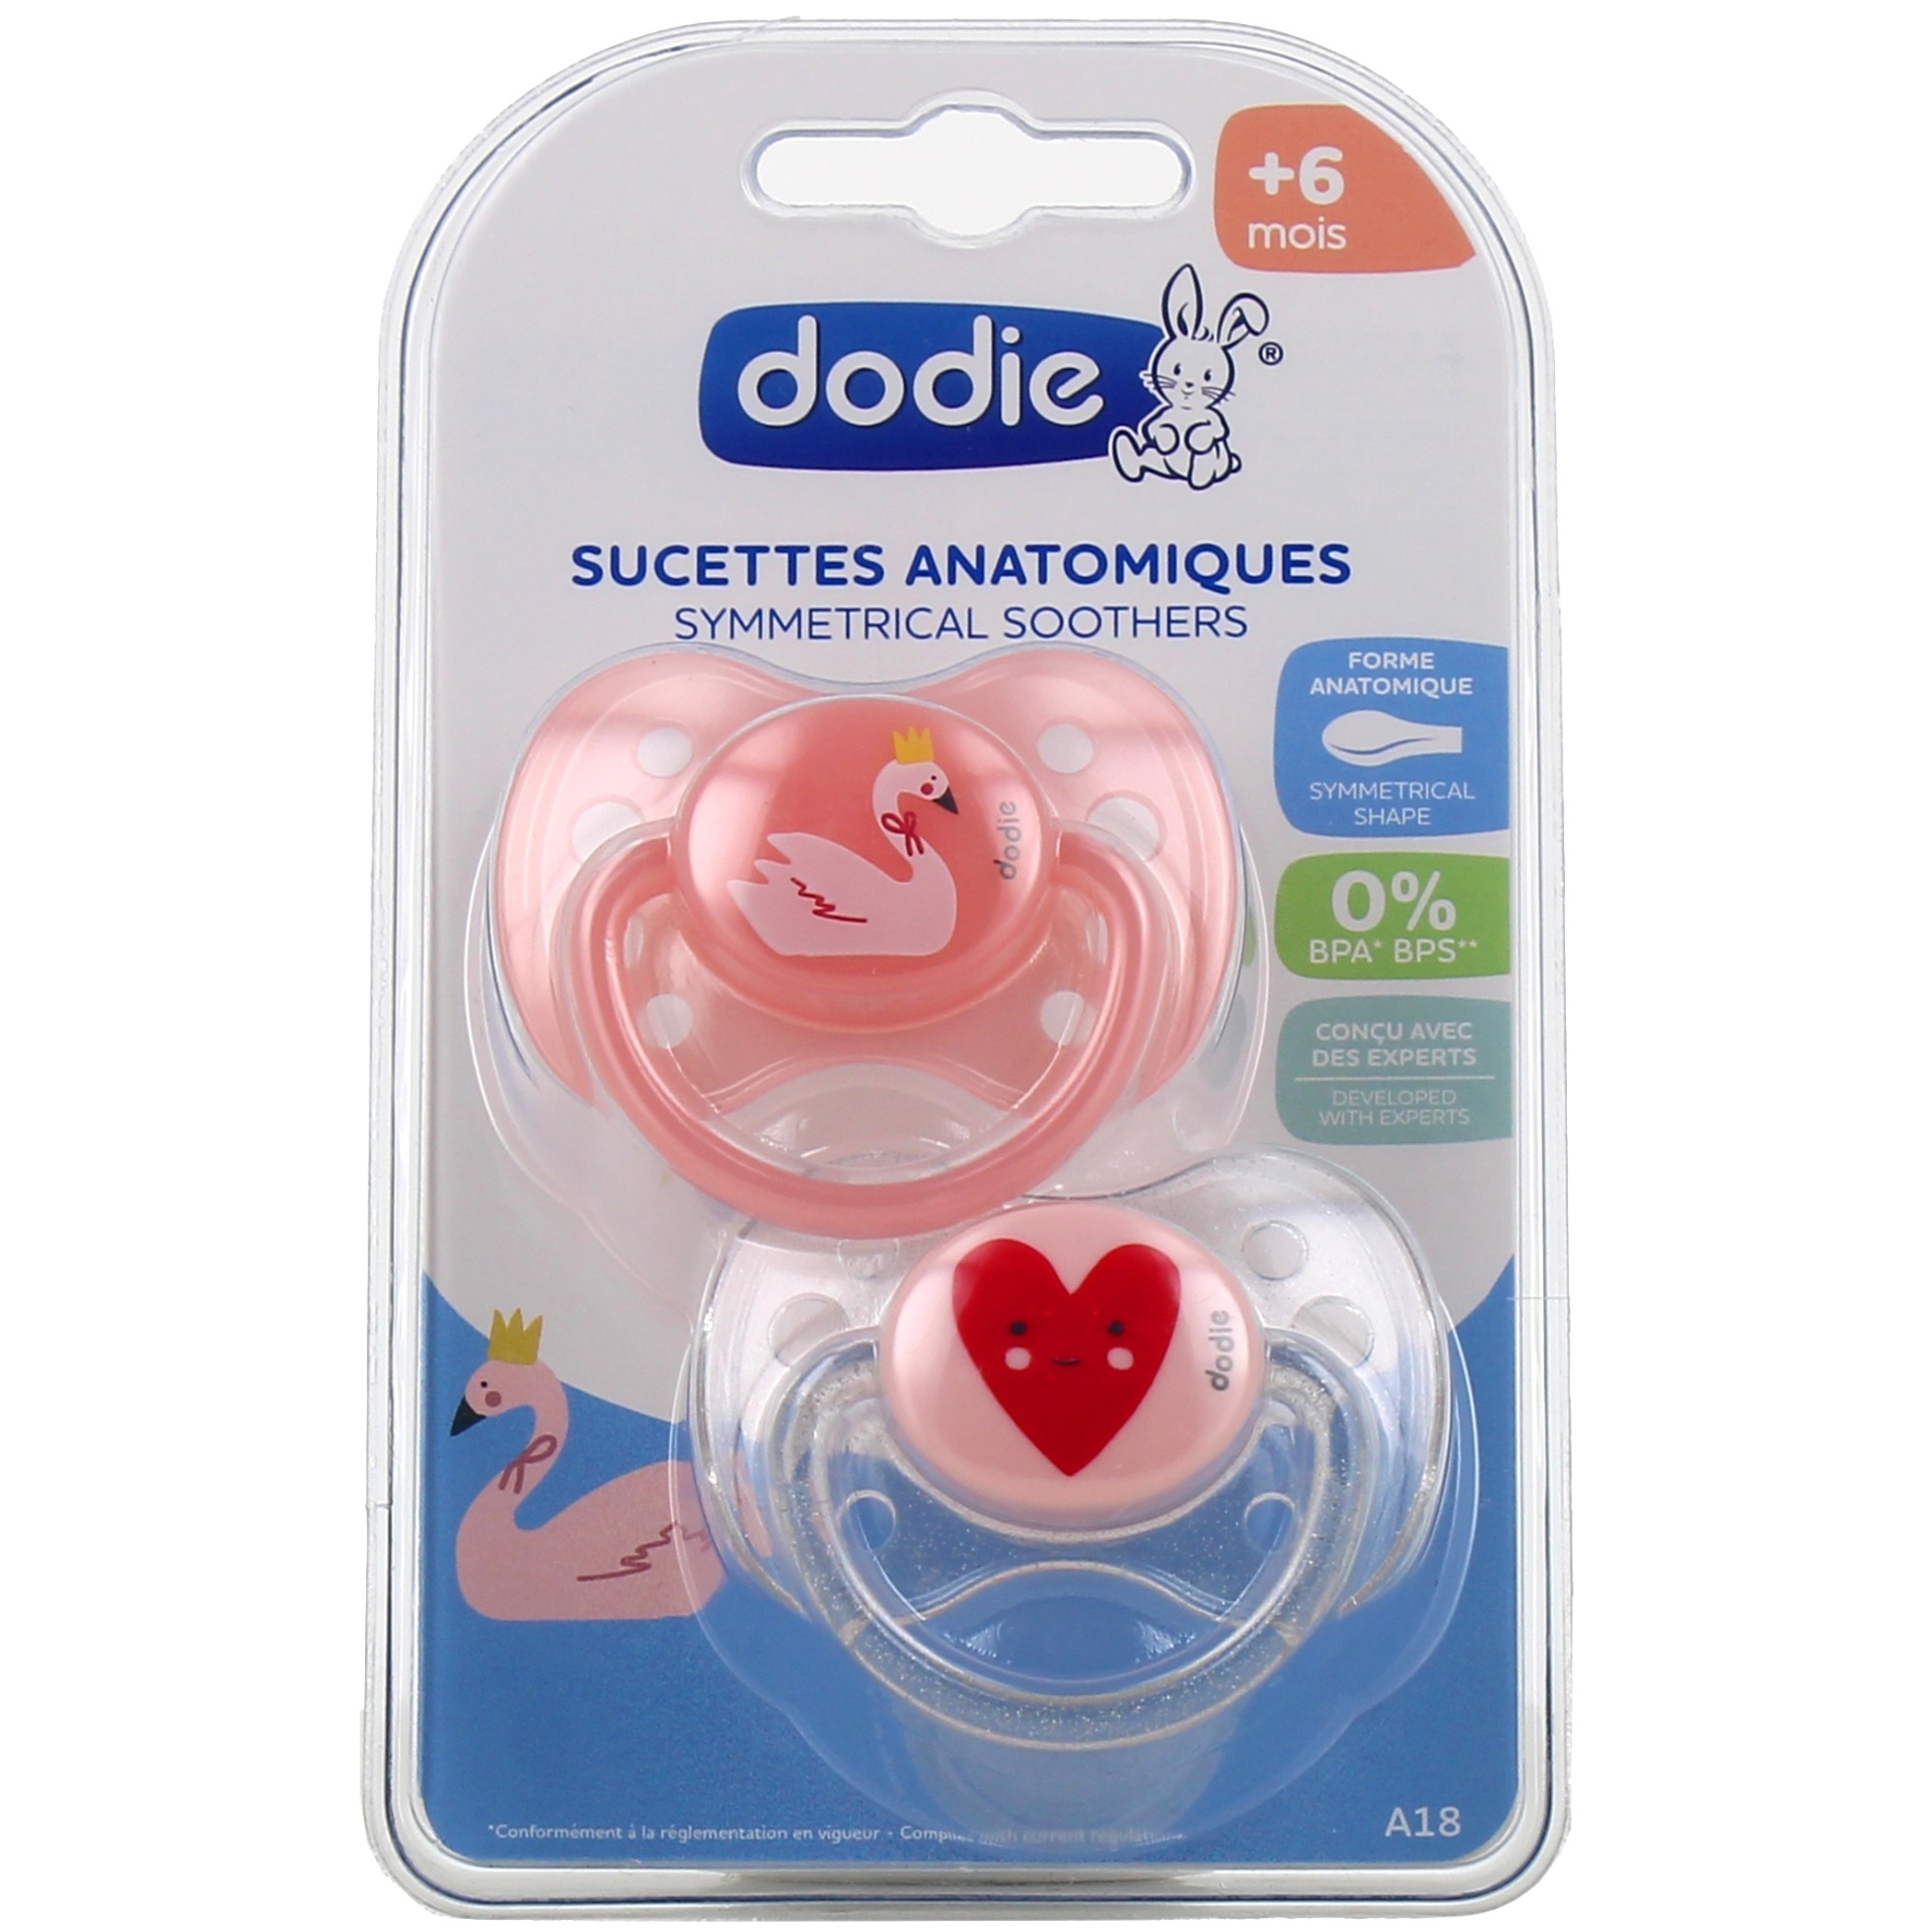 Achetez Dodie Sucette Anatomique Caoutchouc Coeur Transparente 6 mois et  plus duo à 6.99€ seulement ✓ Livraison GRATUITE dès 49€